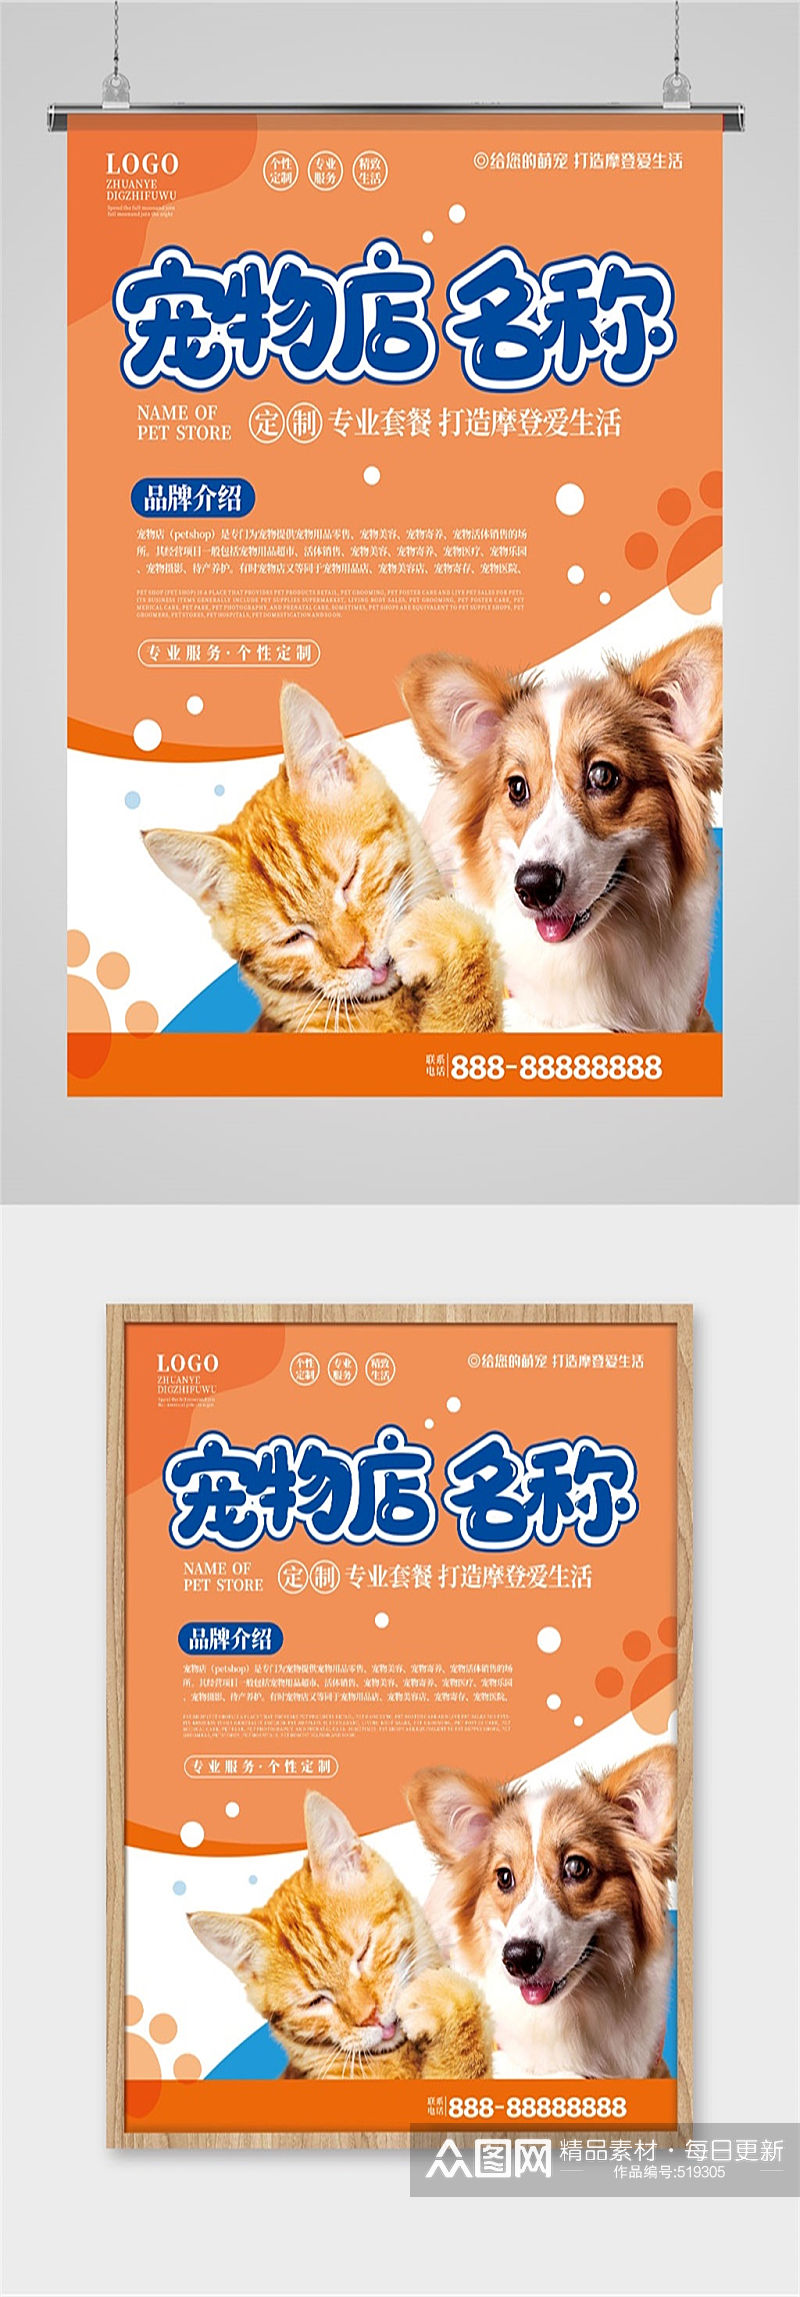 宠物店品牌介绍海报素材